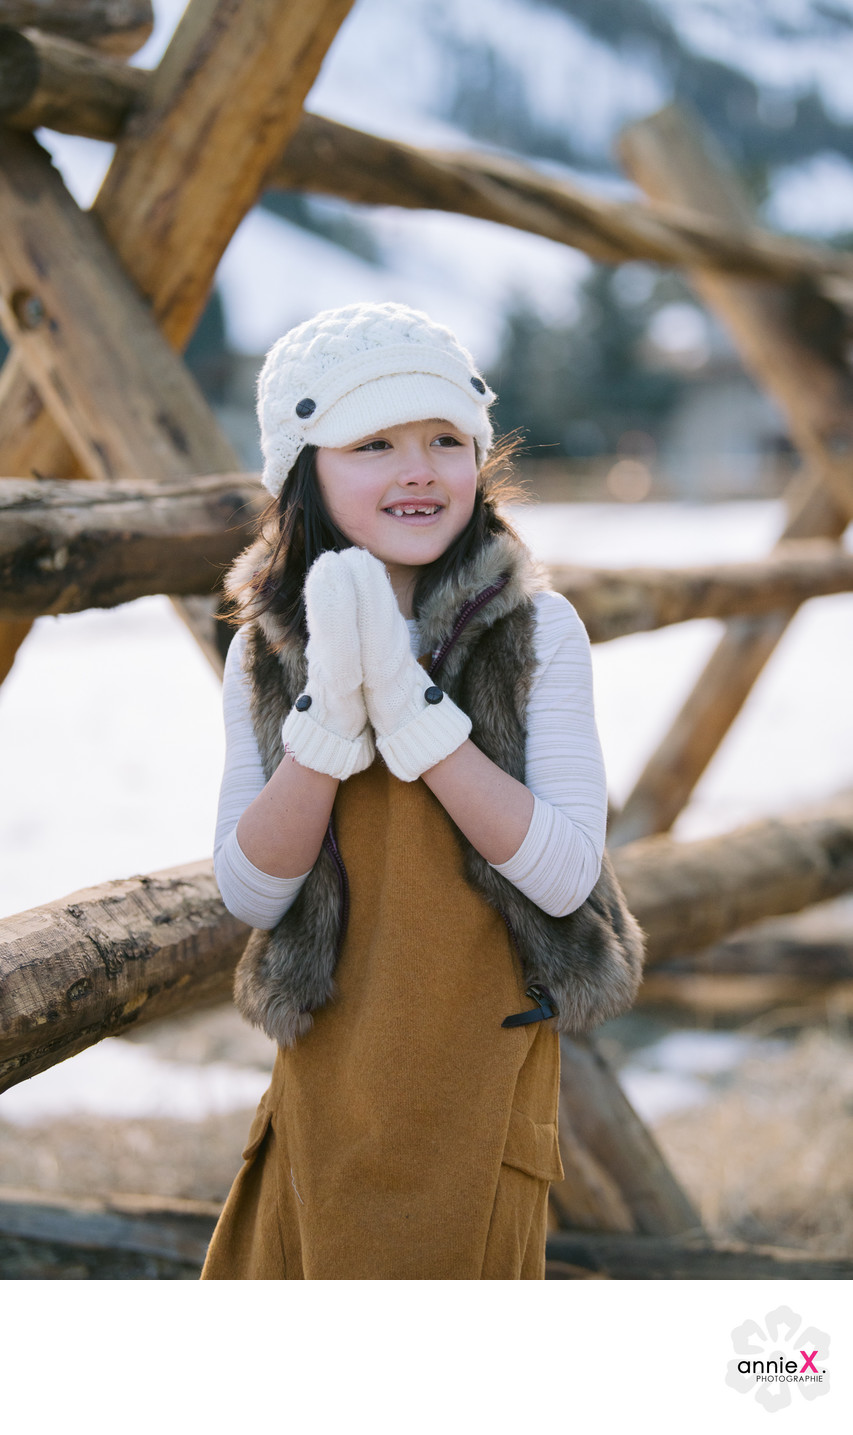 Lifestyle Children Photographer in winter
